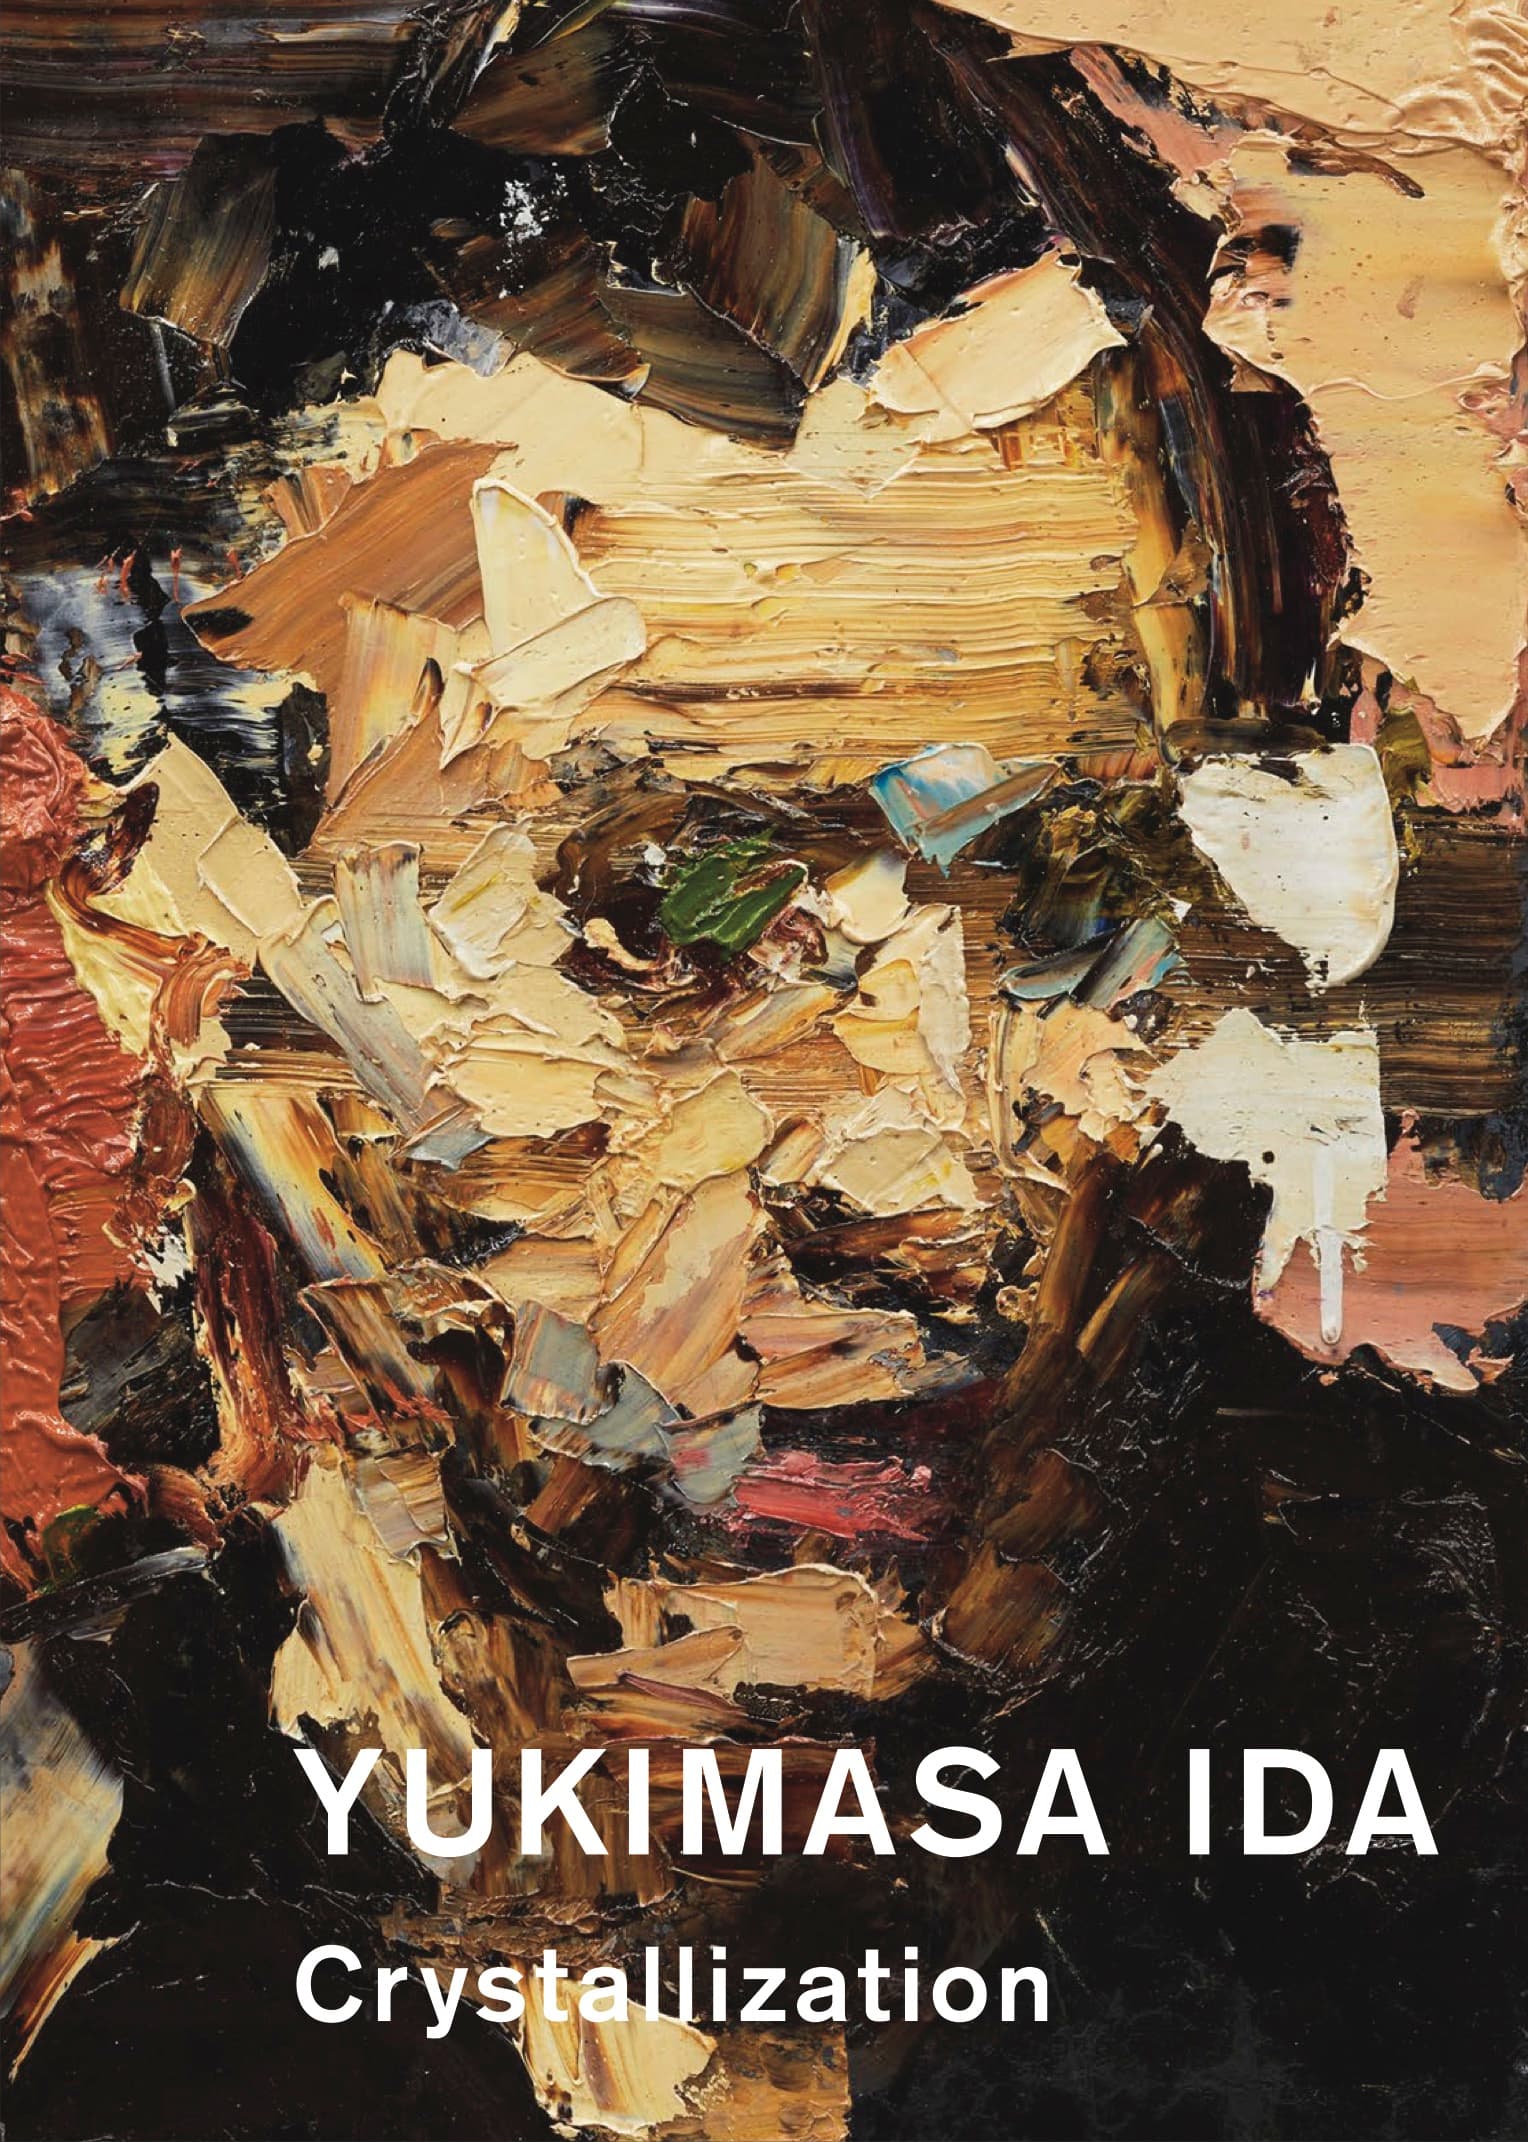 注目の若手アーティスト、井田幸昌が国内初となる作品集『YUKIMASA IDA: Crystallization』刊行。スペシャル仕様の特装版6月2日より抽選販売